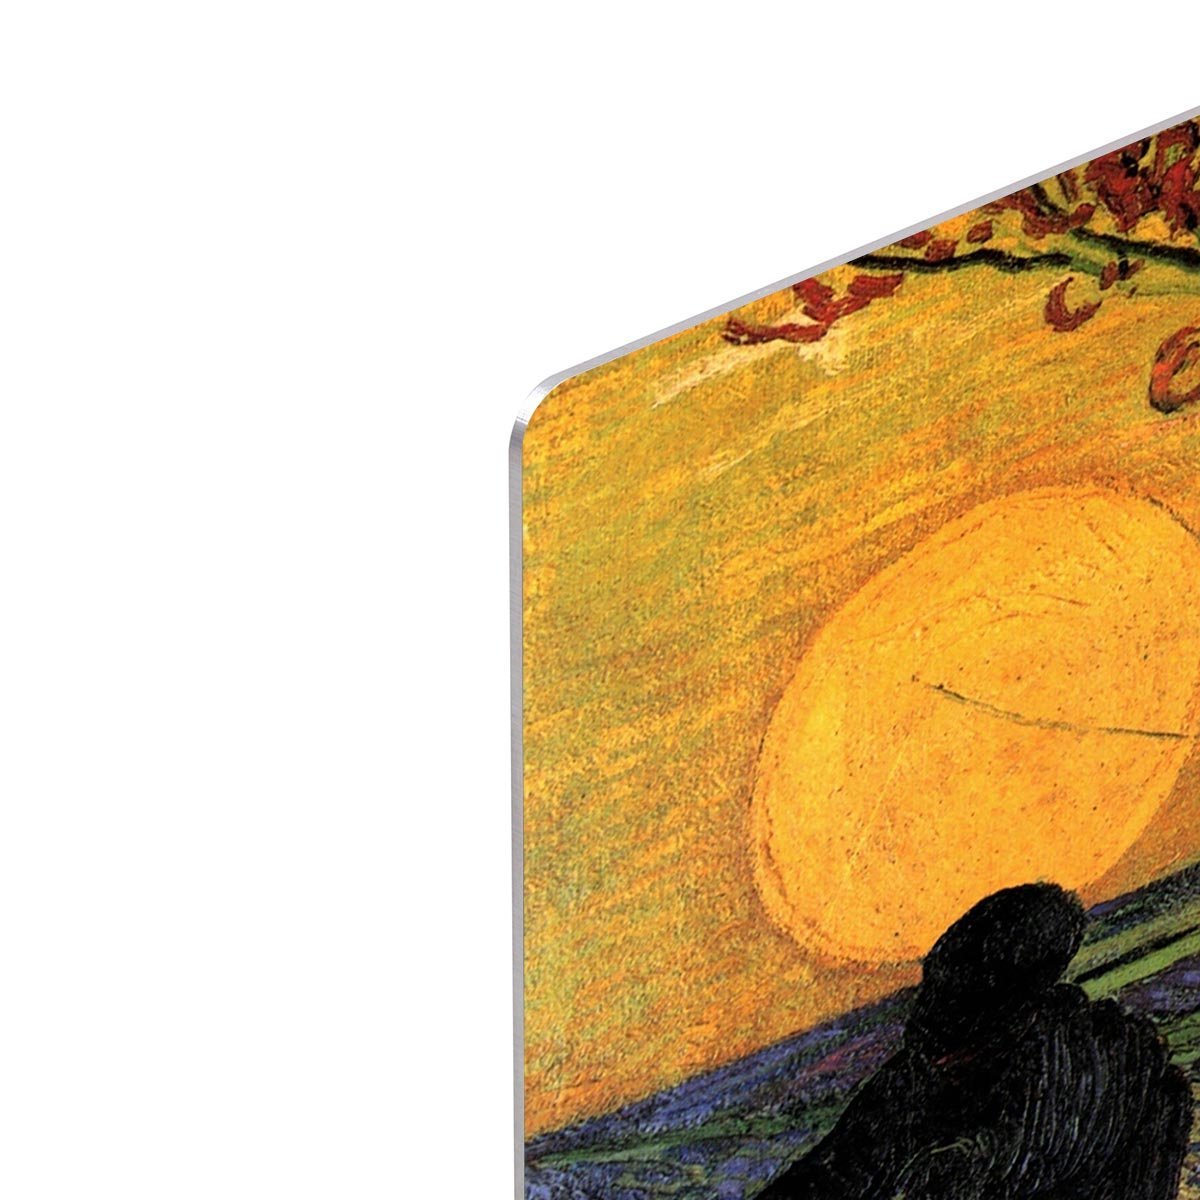 The Sower 2 by Van Gogh HD Metal Print